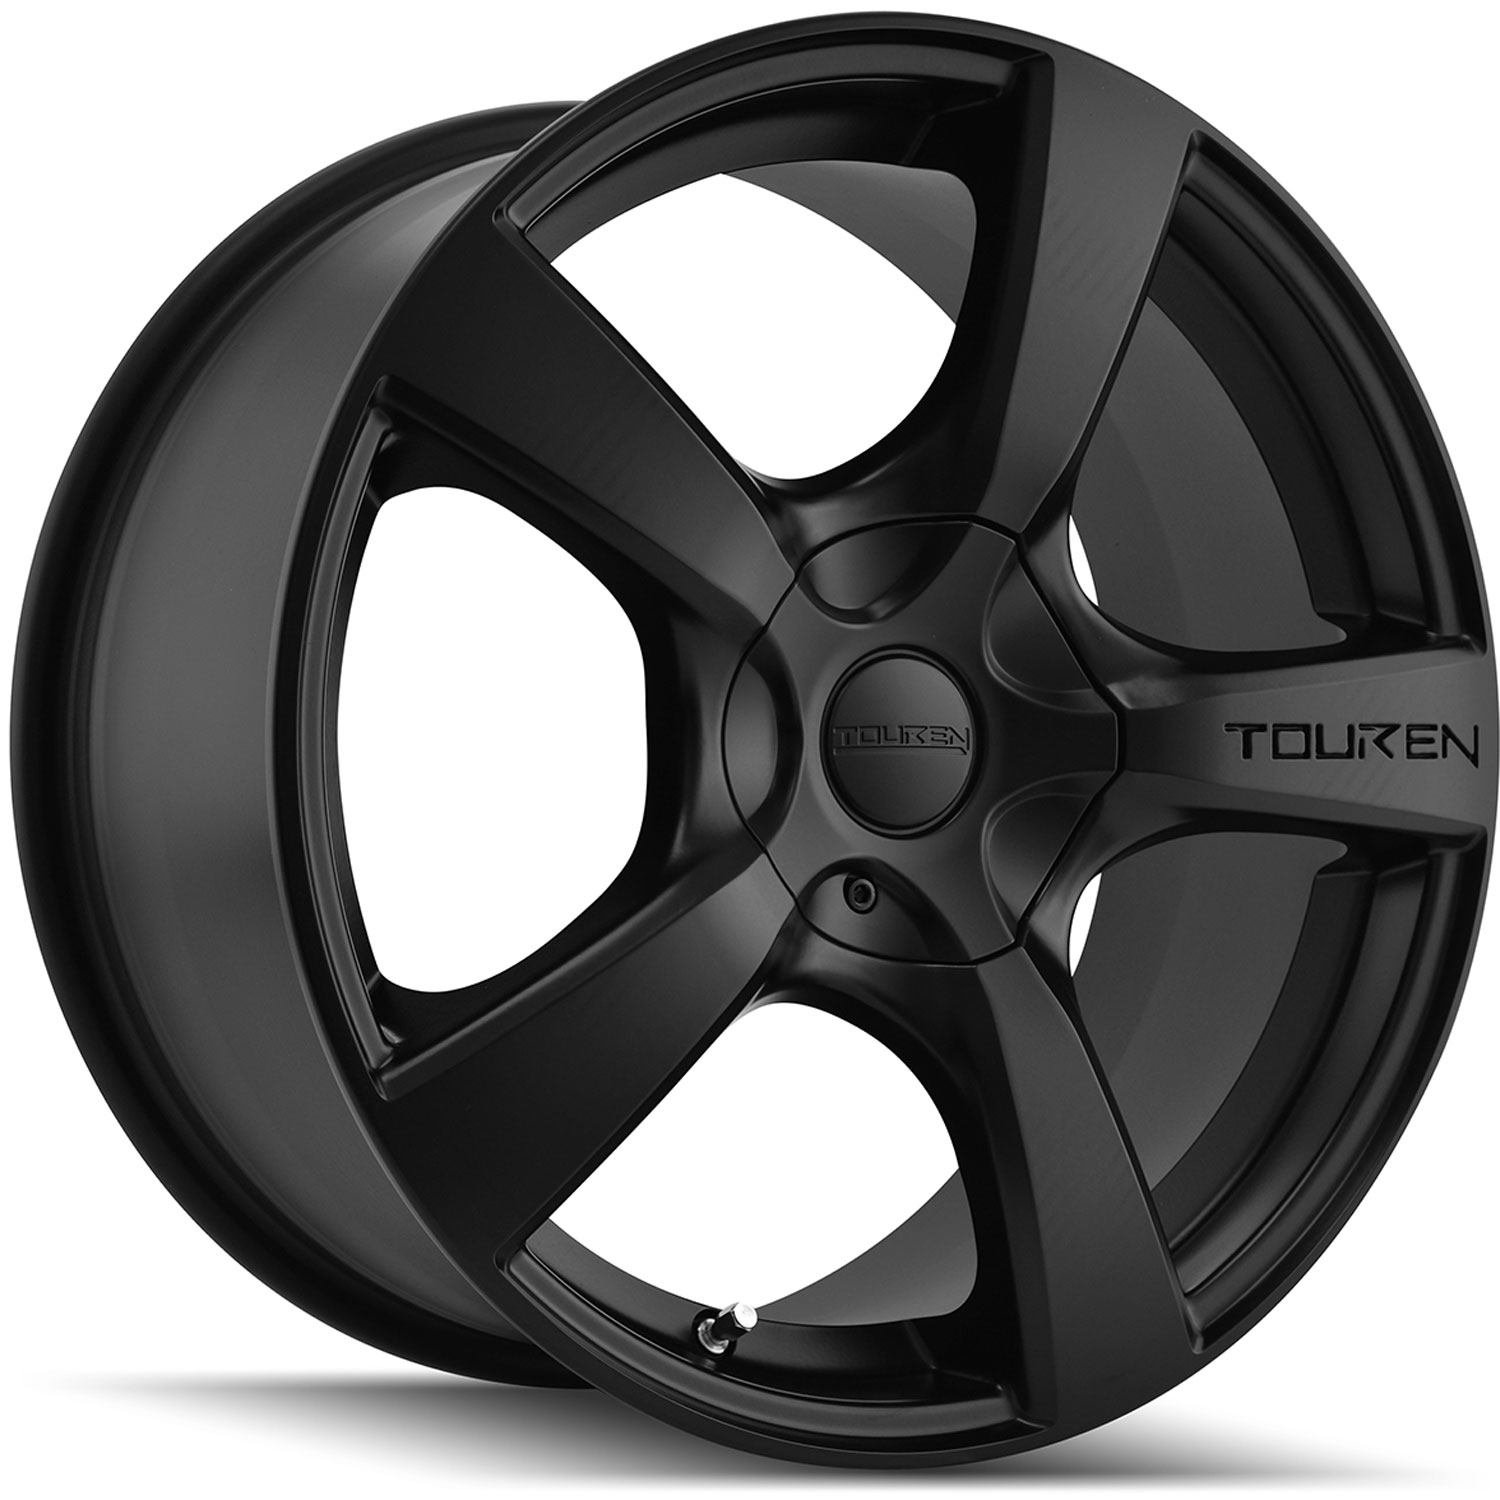 Touren TR9 Series Wheel Size: 19" x 8.5" Bolt Circle: 5 x 127mm